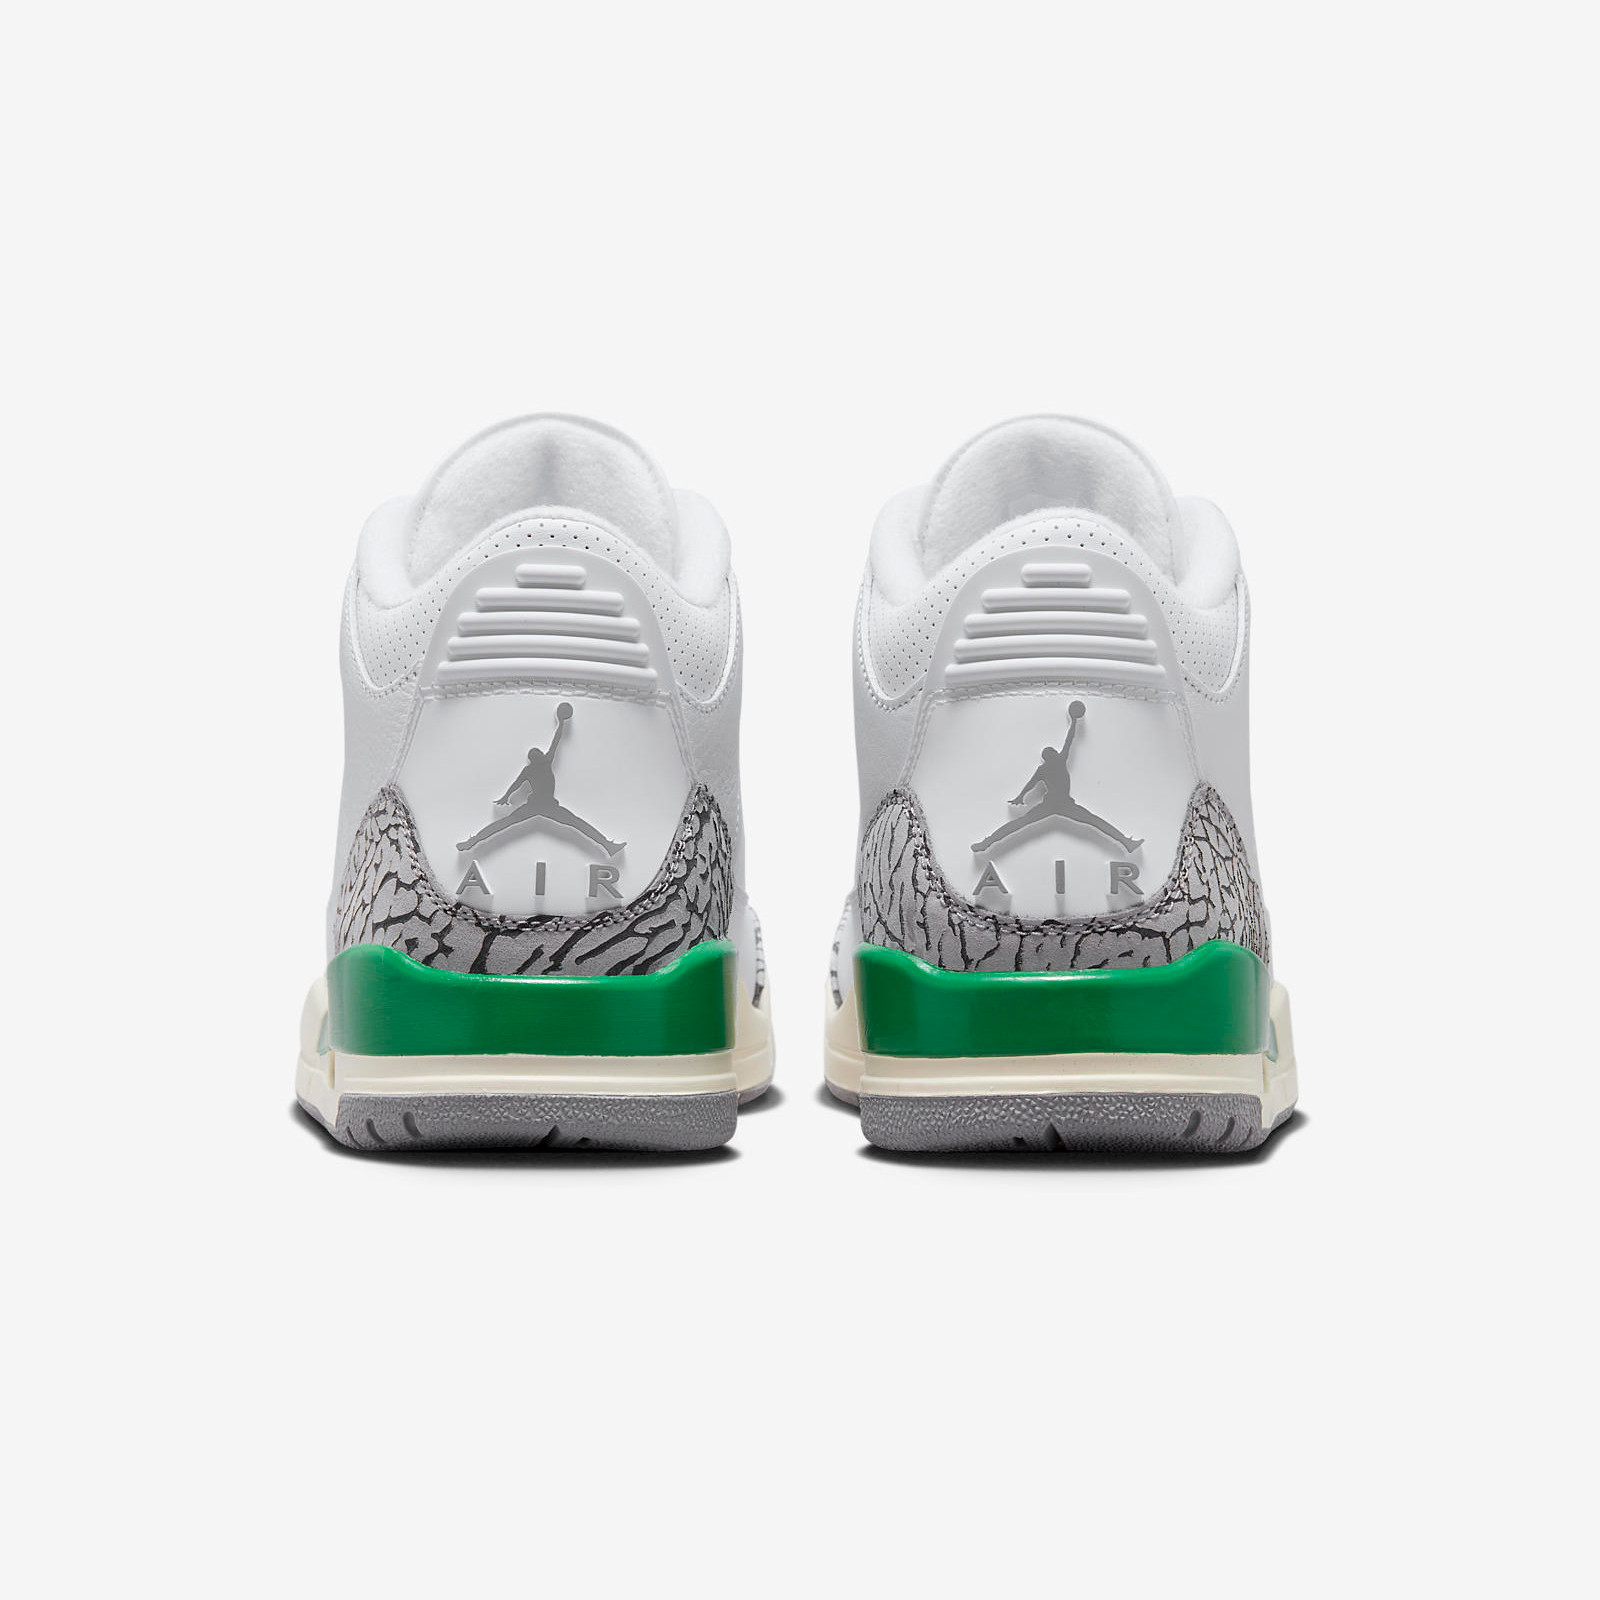 Air Jordan 3 Retro
« Lucky Green »